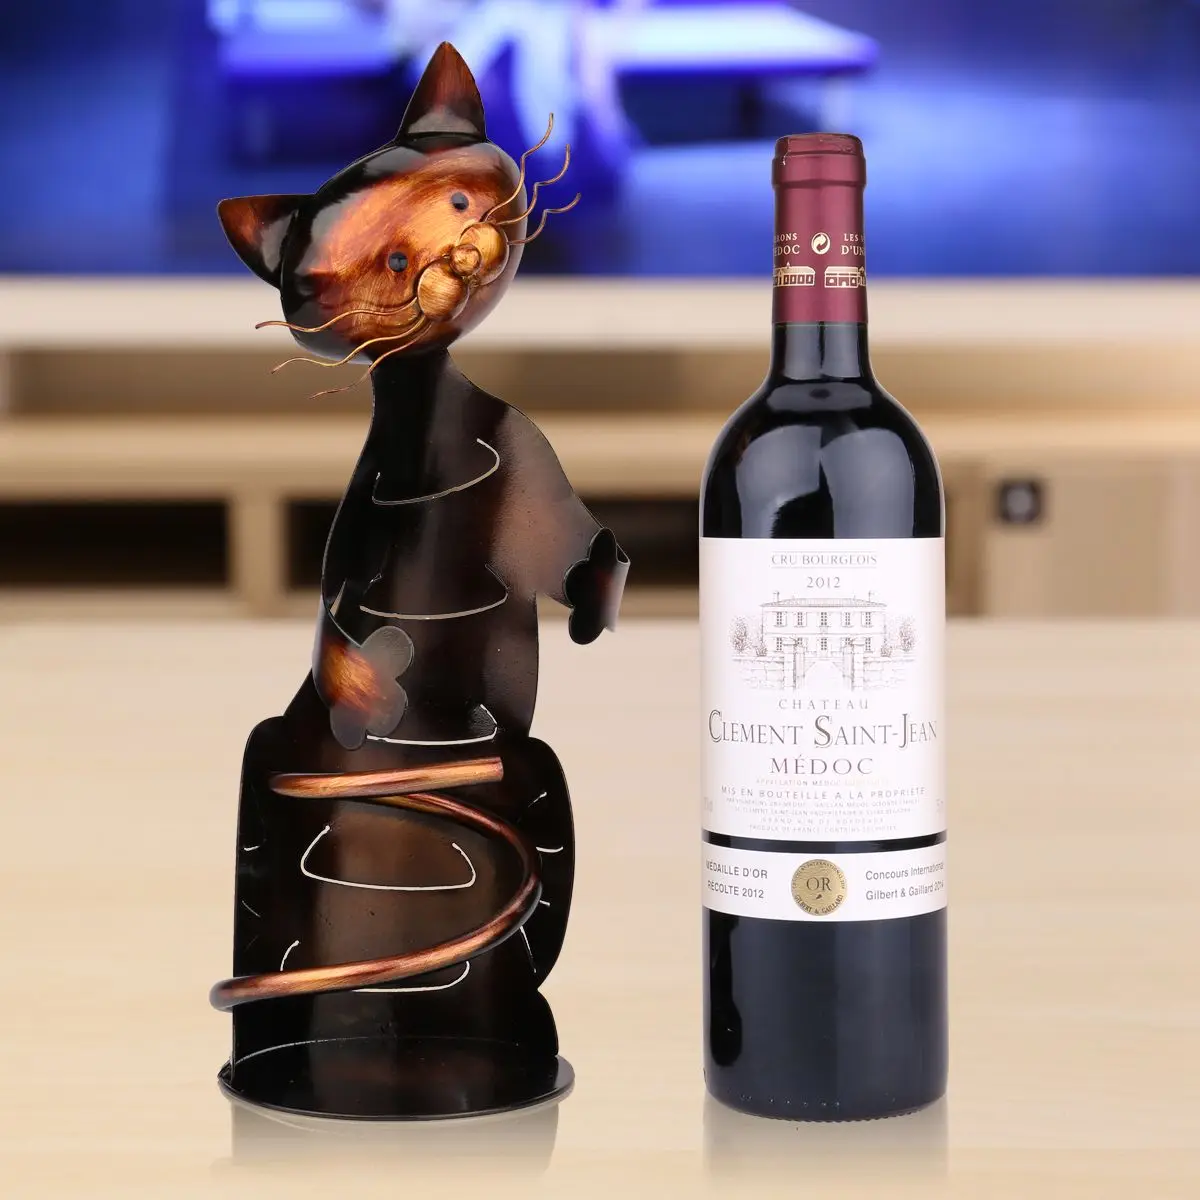 Tooarts железная скульптура в форме кота держатель для бутылки вина полка металлическая скульптура практичная скульптура домашние поделки для декорирования интерьера